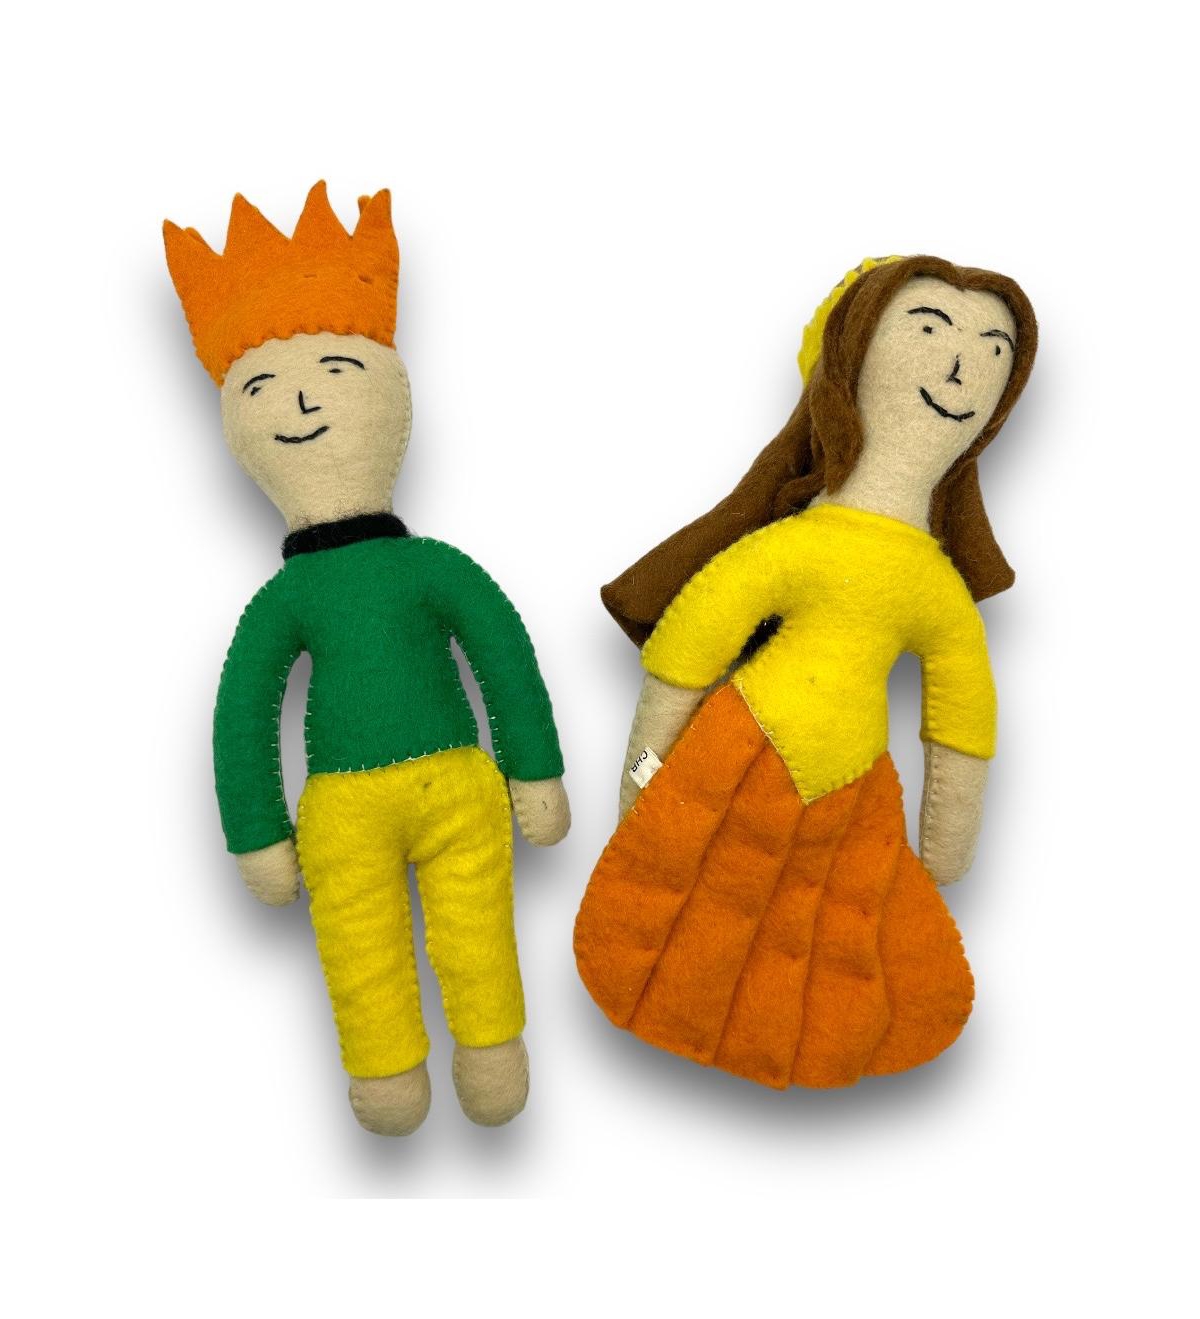 Prince and Princess Felt Dog Toys - Green, yellow